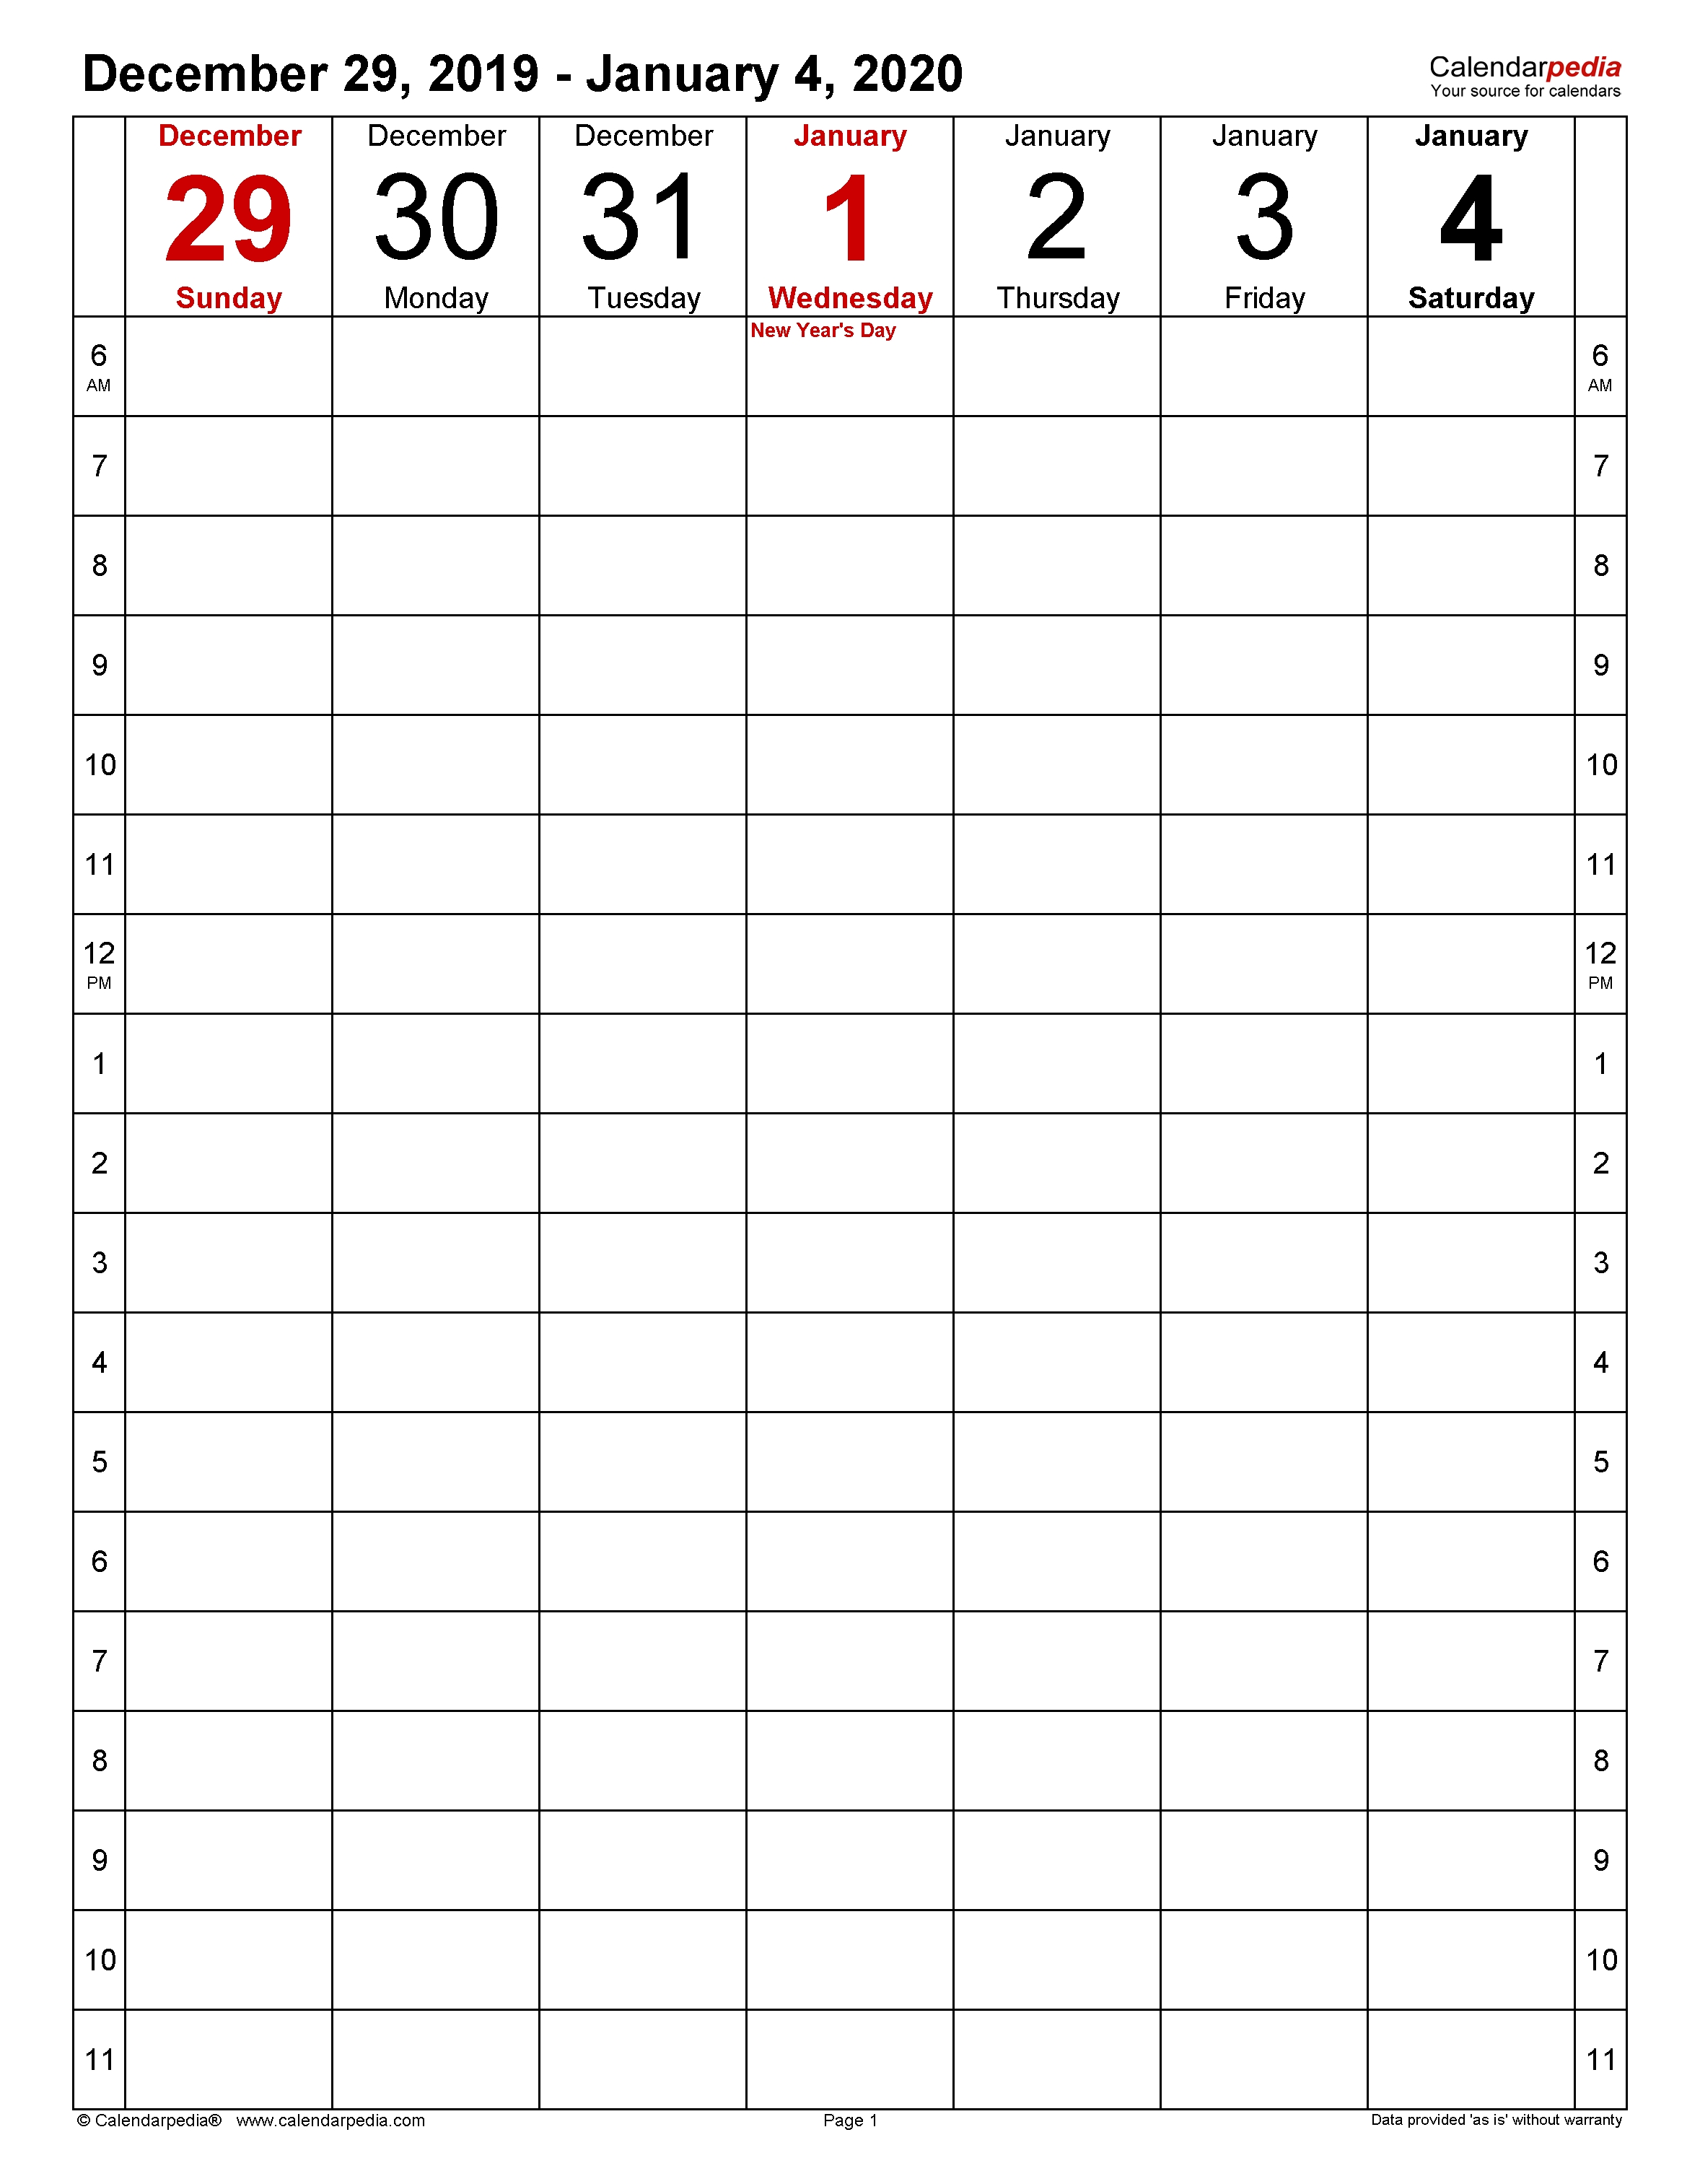 Weekly Calendars 2020 For Word - 12 Free Printable Templates 9 Week Calendar Template